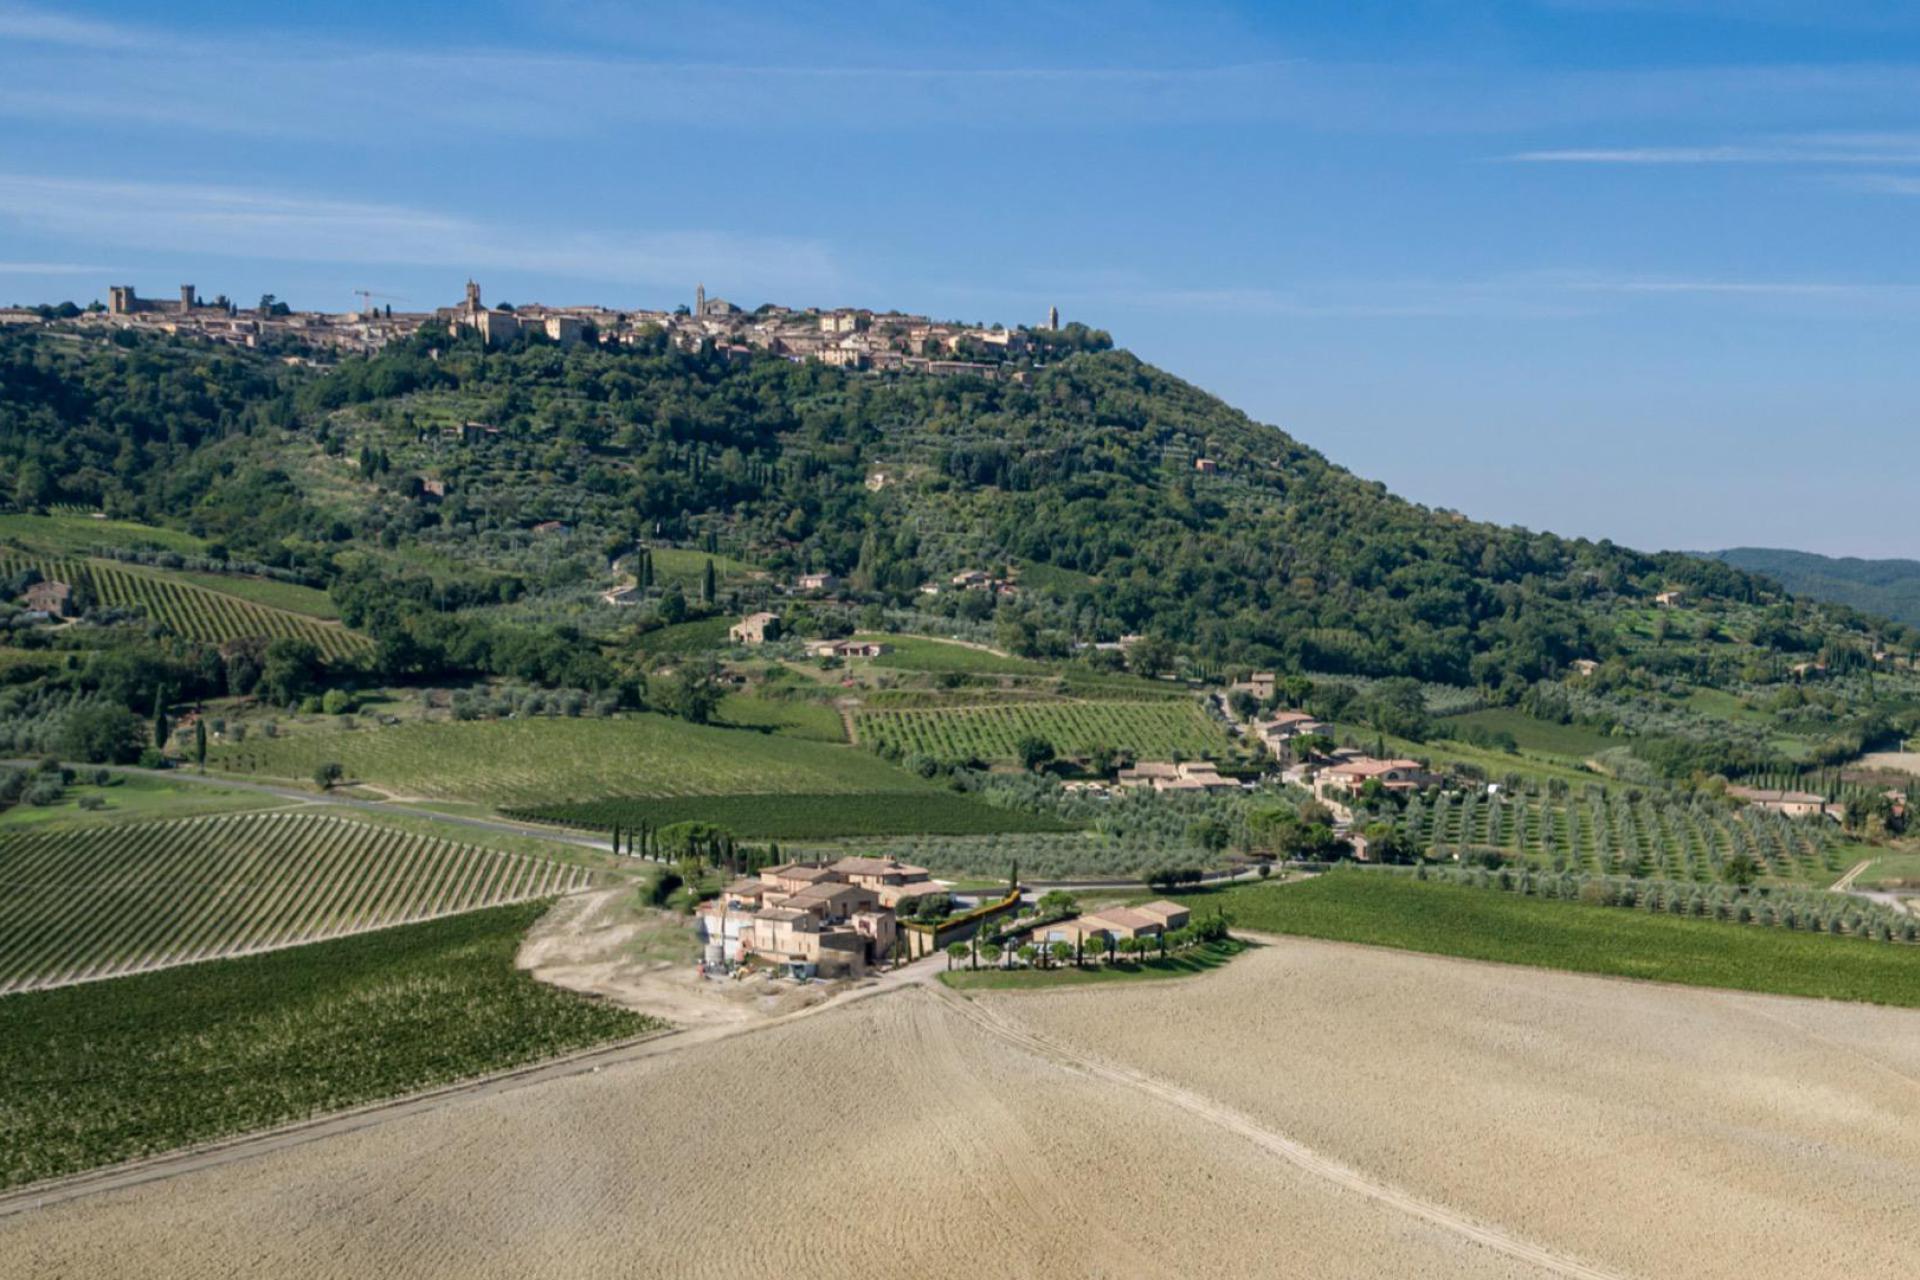 Agriturismo Tuscany Luxury agriturismo amidst the vineyards of the Brunello